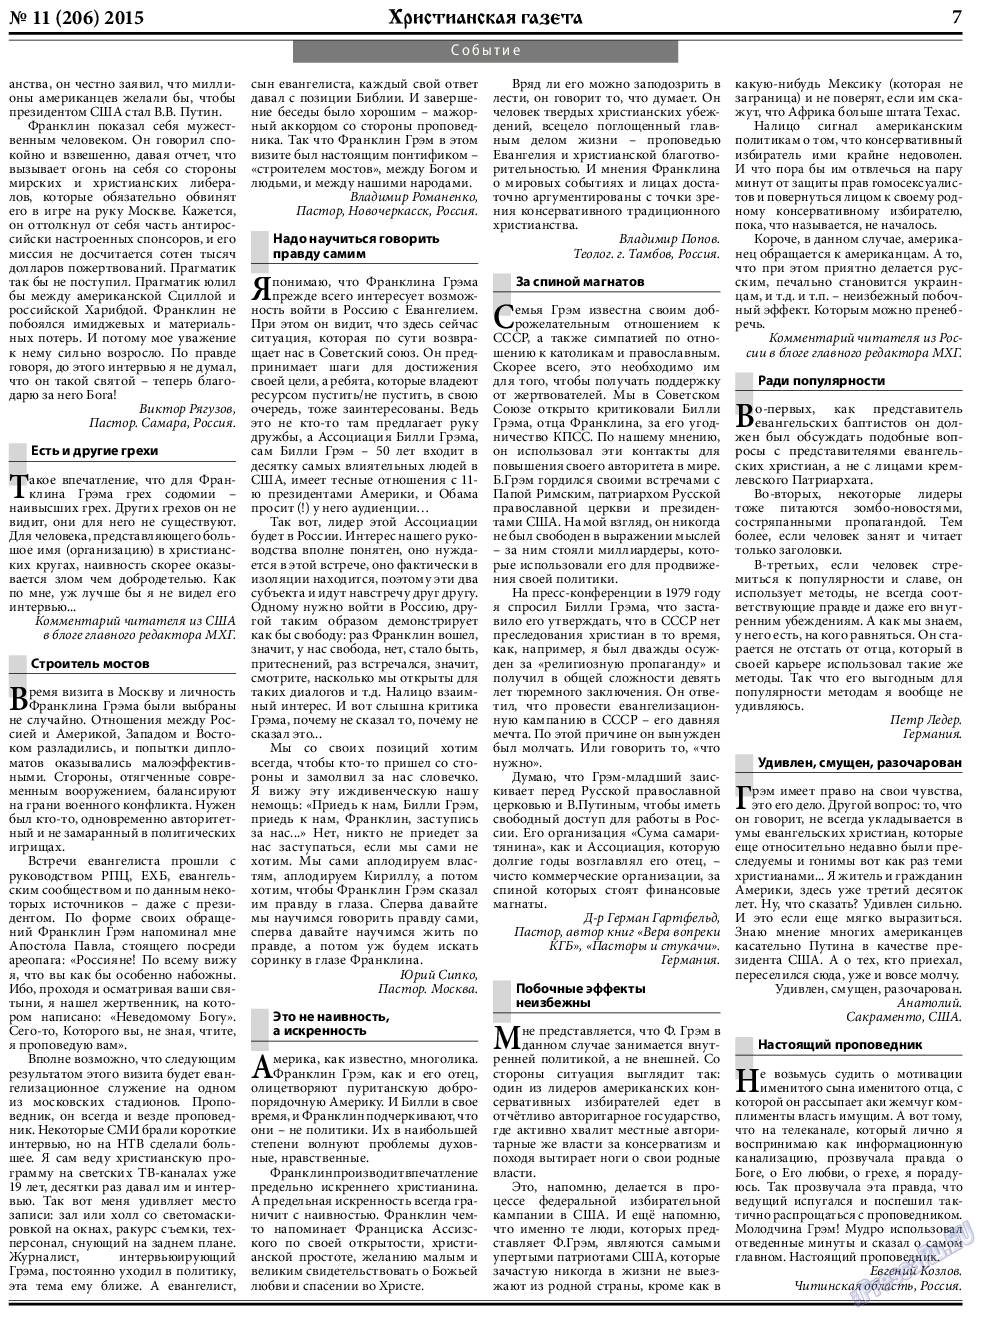 Христианская газета (газета). 2015 год, номер 11, стр. 7